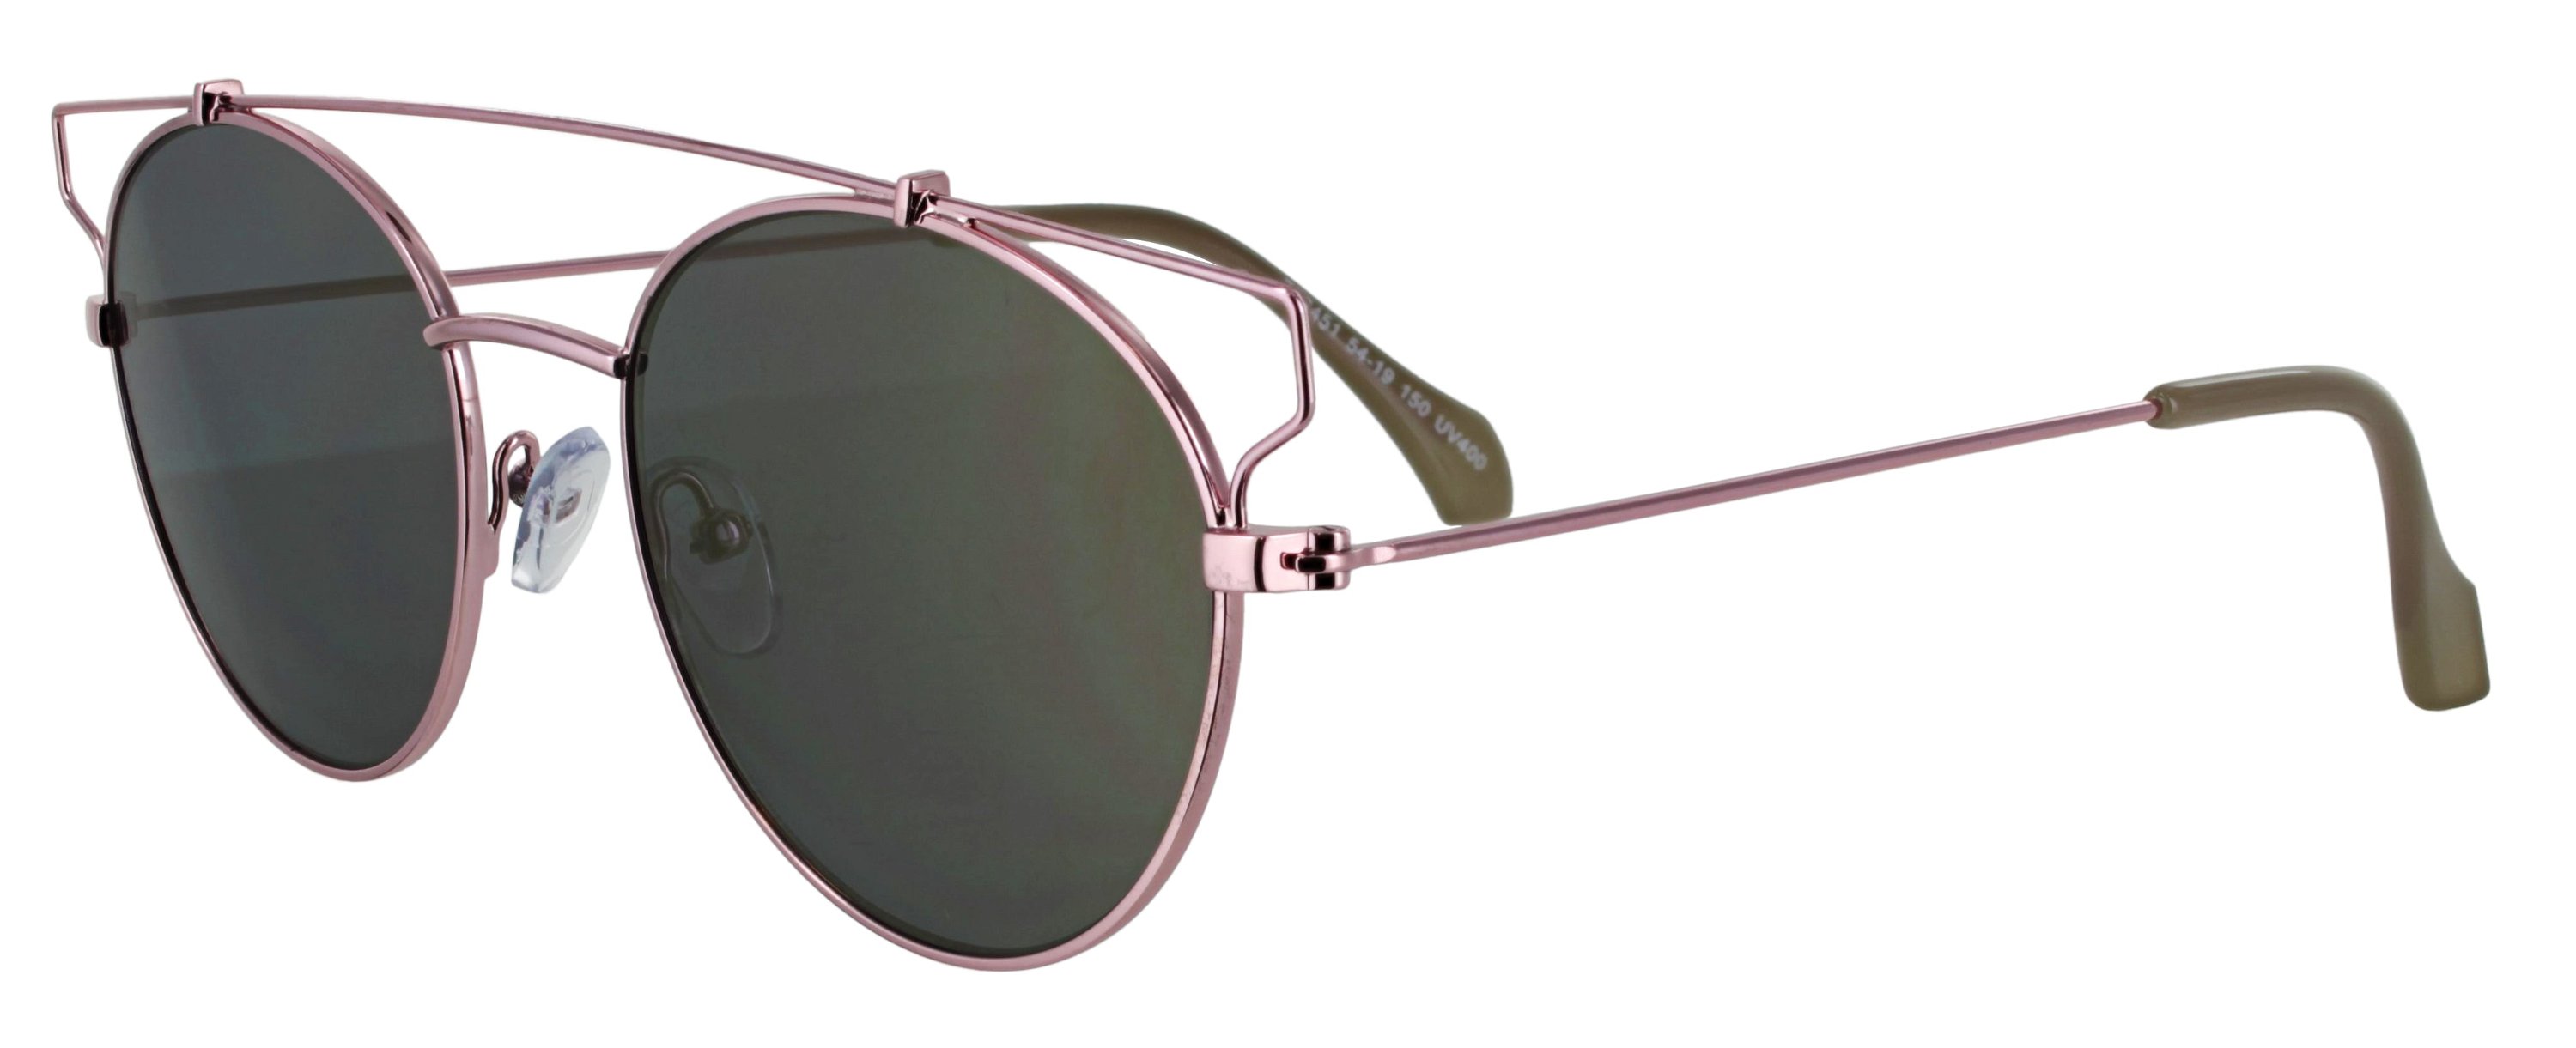 Das Bild zeigt die Sonnenbrille 717451 von der Marke Abele Optik in pink.